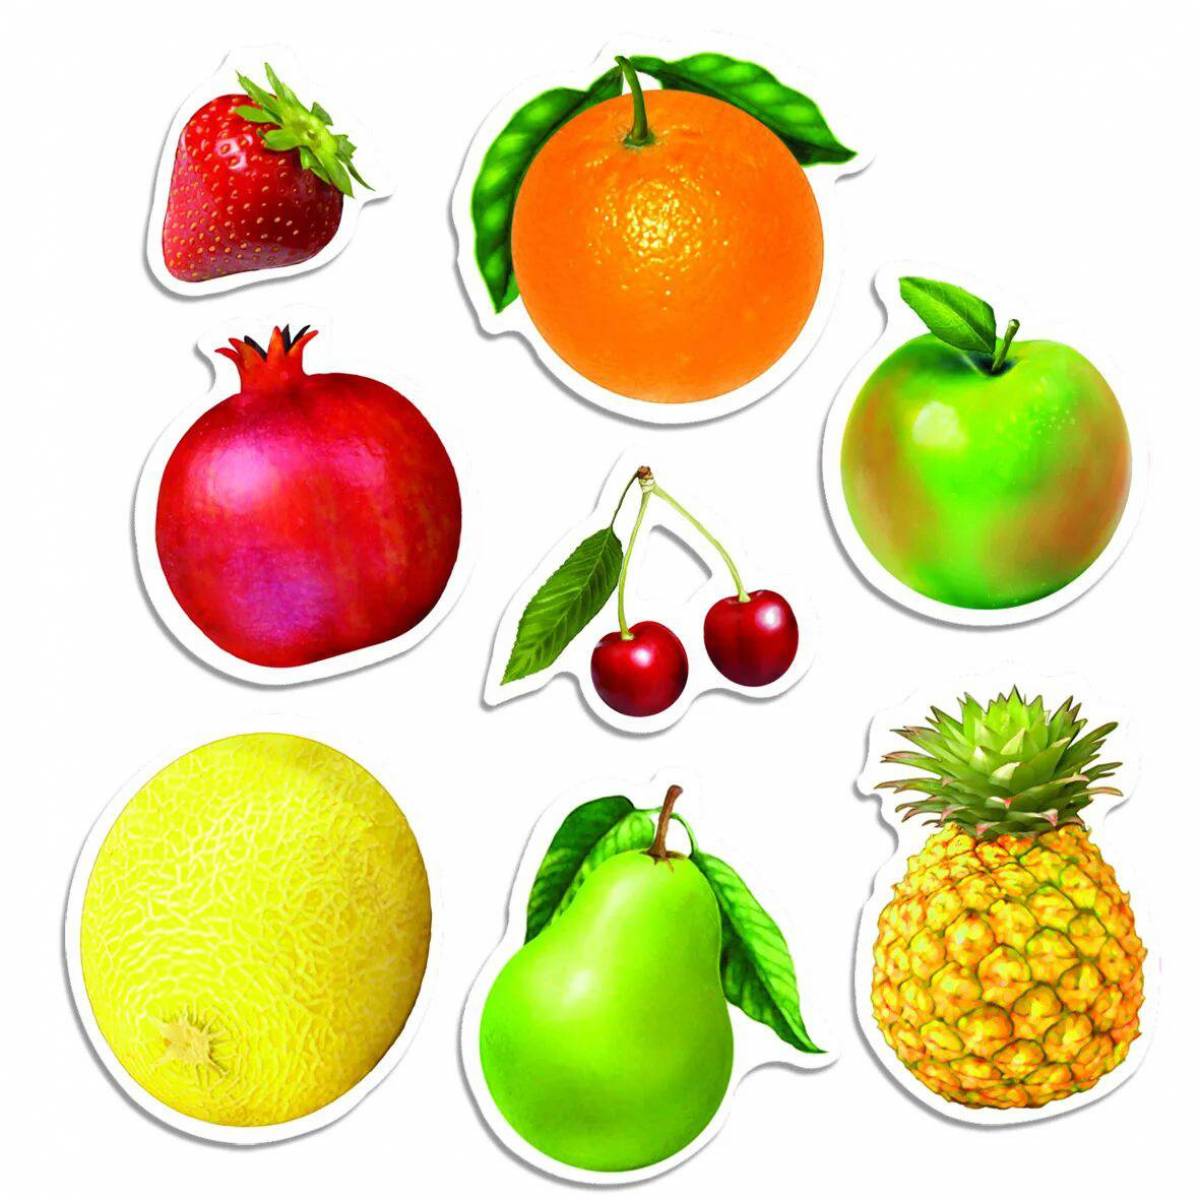 картинки про фрукты для детей